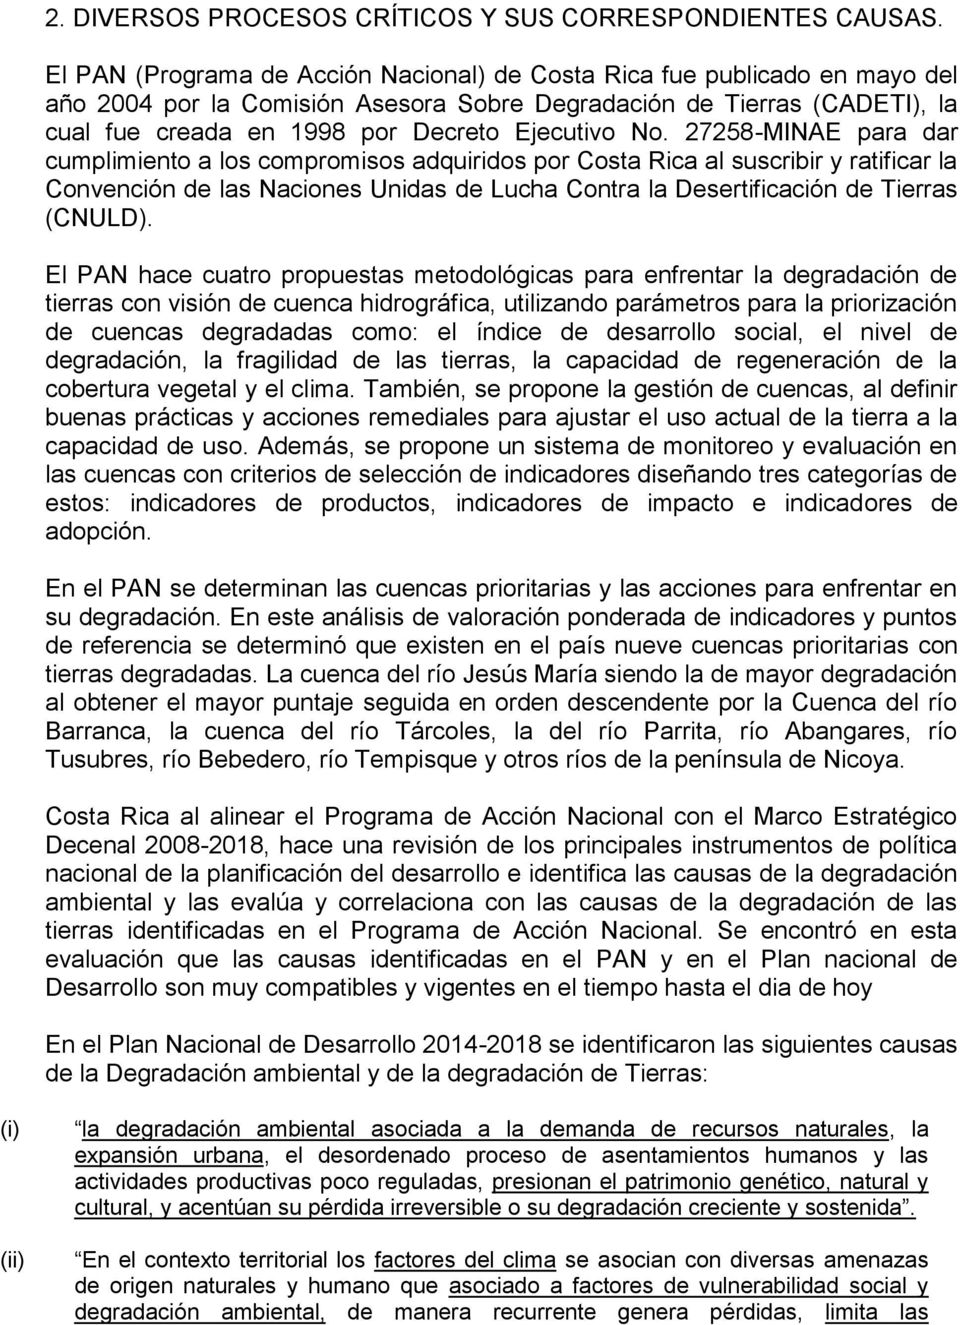 No. 27258-MINAE para dar cumplimiento a los compromisos adquiridos por Costa Rica al suscribir y ratificar la Convención de las Naciones Unidas de Lucha Contra la Desertificación de Tierras (CNULD).